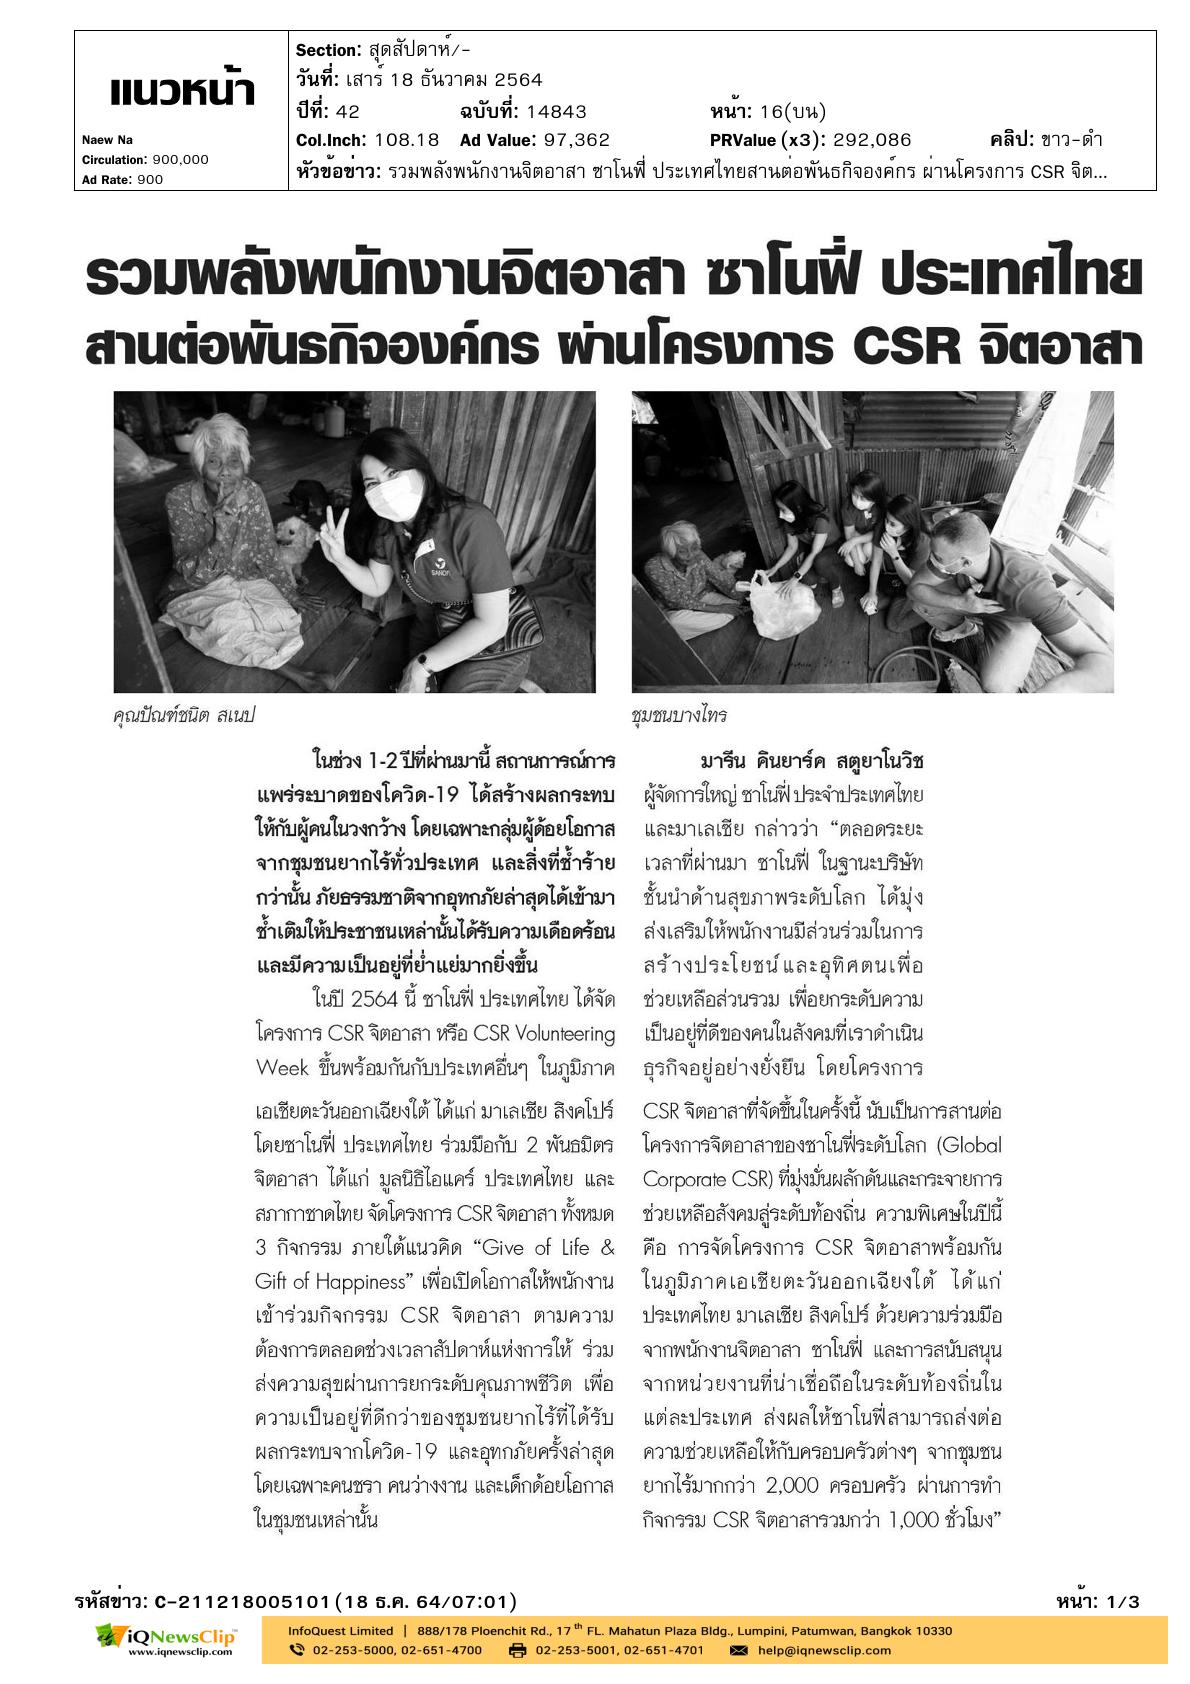 บทความเรื่อง “รวมพลังพนักงานจิตอาสา ซาโนฟี่ ประเทศไทย  สานต่อพันธกิจองค์กร ผ่านโครงการ CSR จิตอาสา”